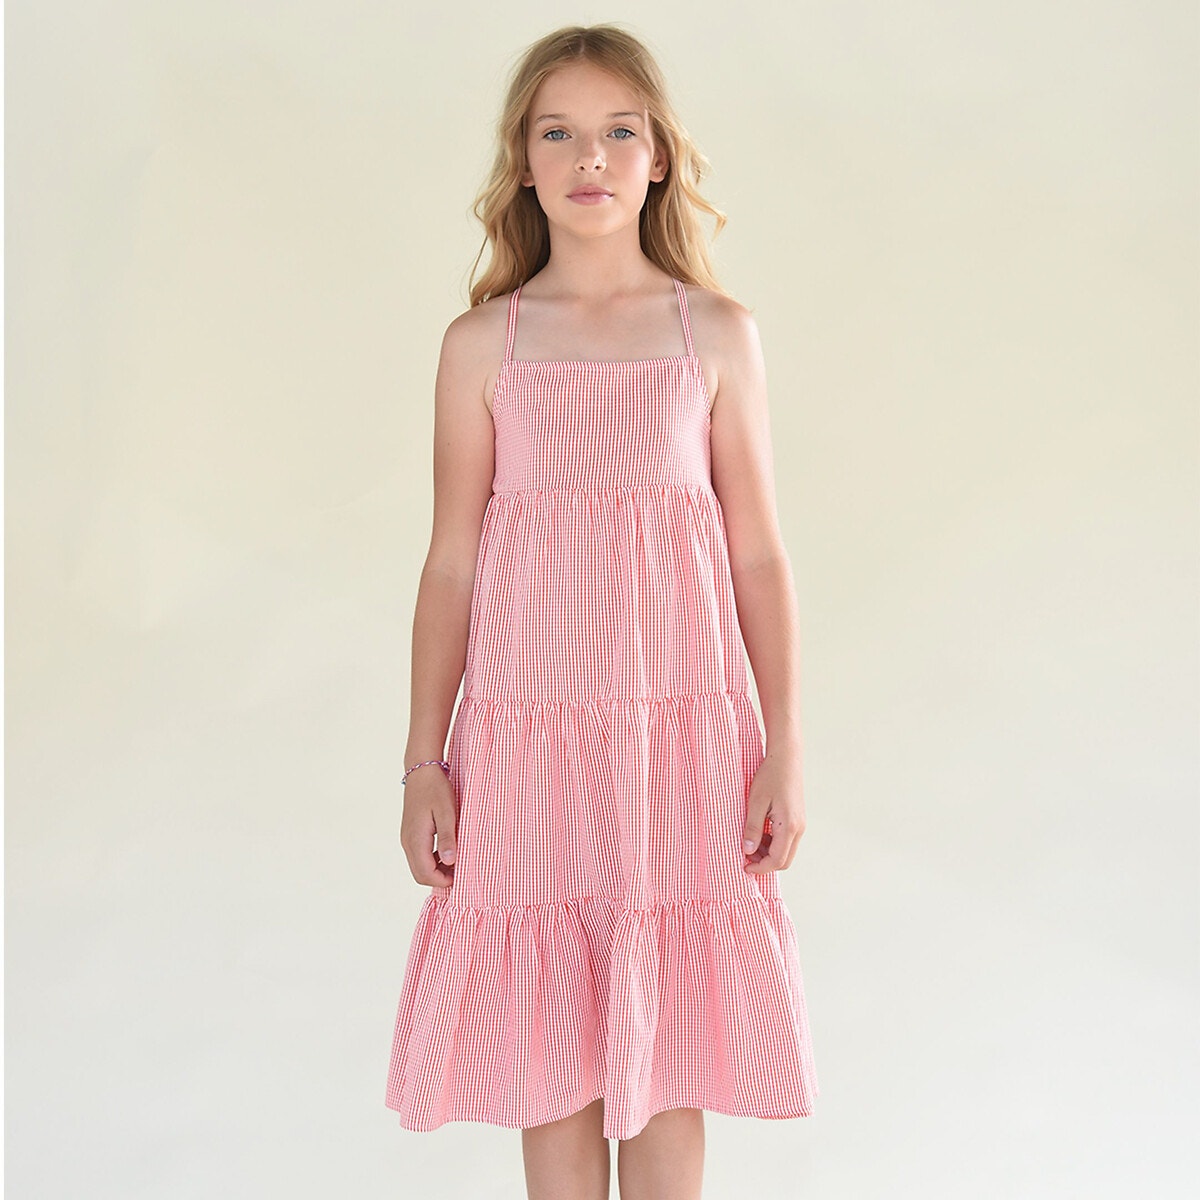 Φόρεμα με μικρά καρό, 8-16 ετών